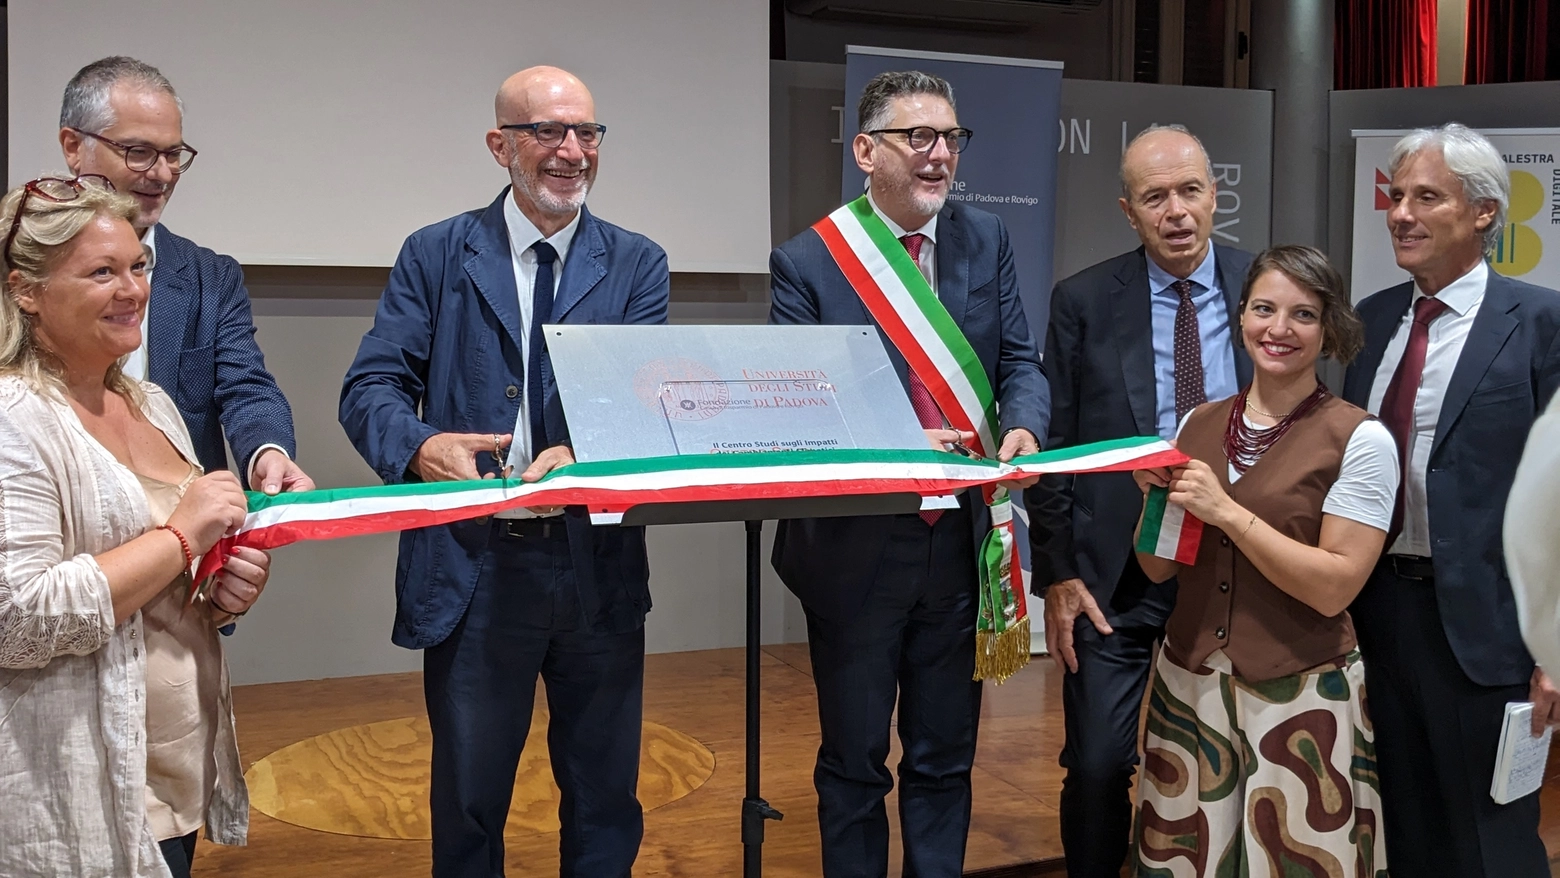 L’Università di Padova e Fondazione Cariparo hanno attivato a Rovigo un'innovativa laurea sui temi del rischio idrologico e geologico